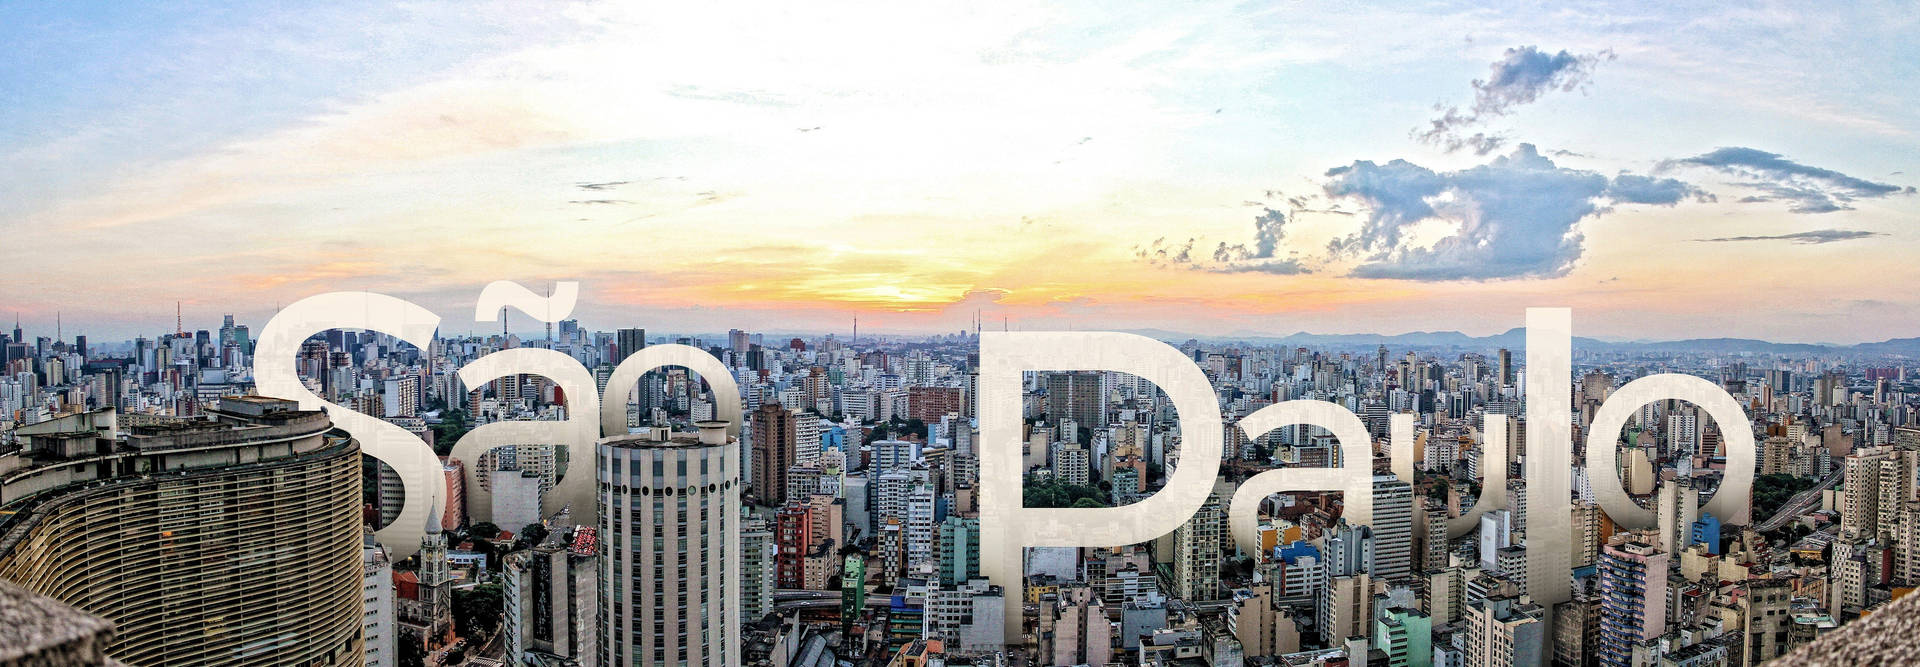 Sao Paulo Brazil Cityscape